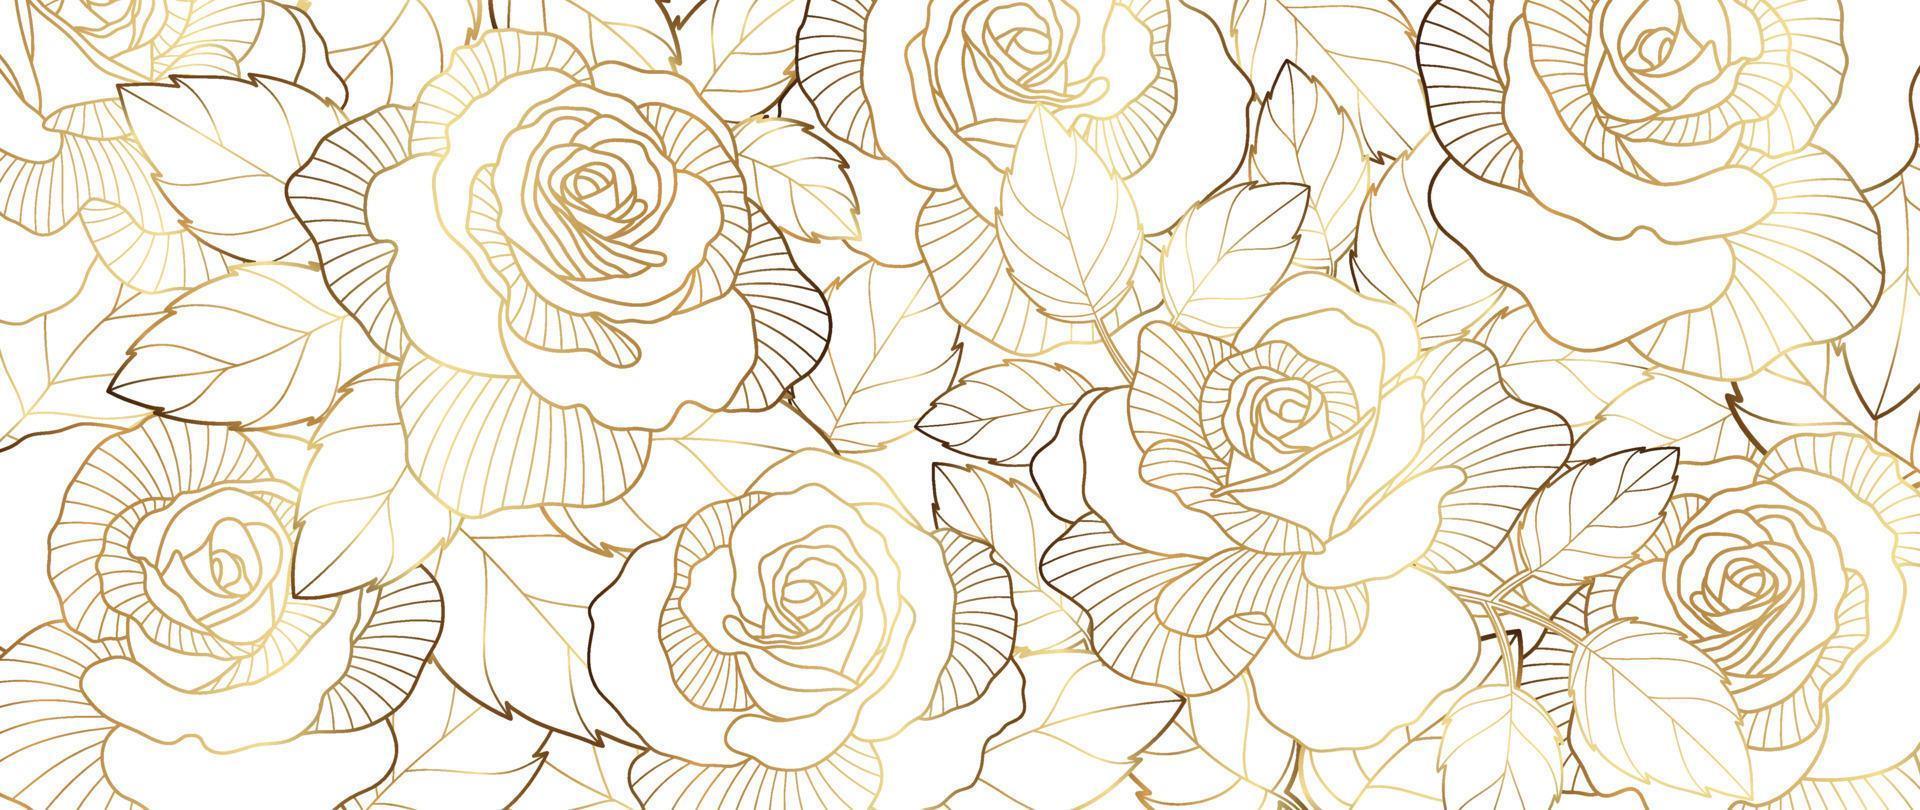 lusso d'oro rosa fiore linea arte sfondo vettore. naturale botanico elegante fiore con oro linea arte. design illustrazione per decorazione, parete arredamento, sfondo, coperchio, striscione, manifesto, carta. vettore